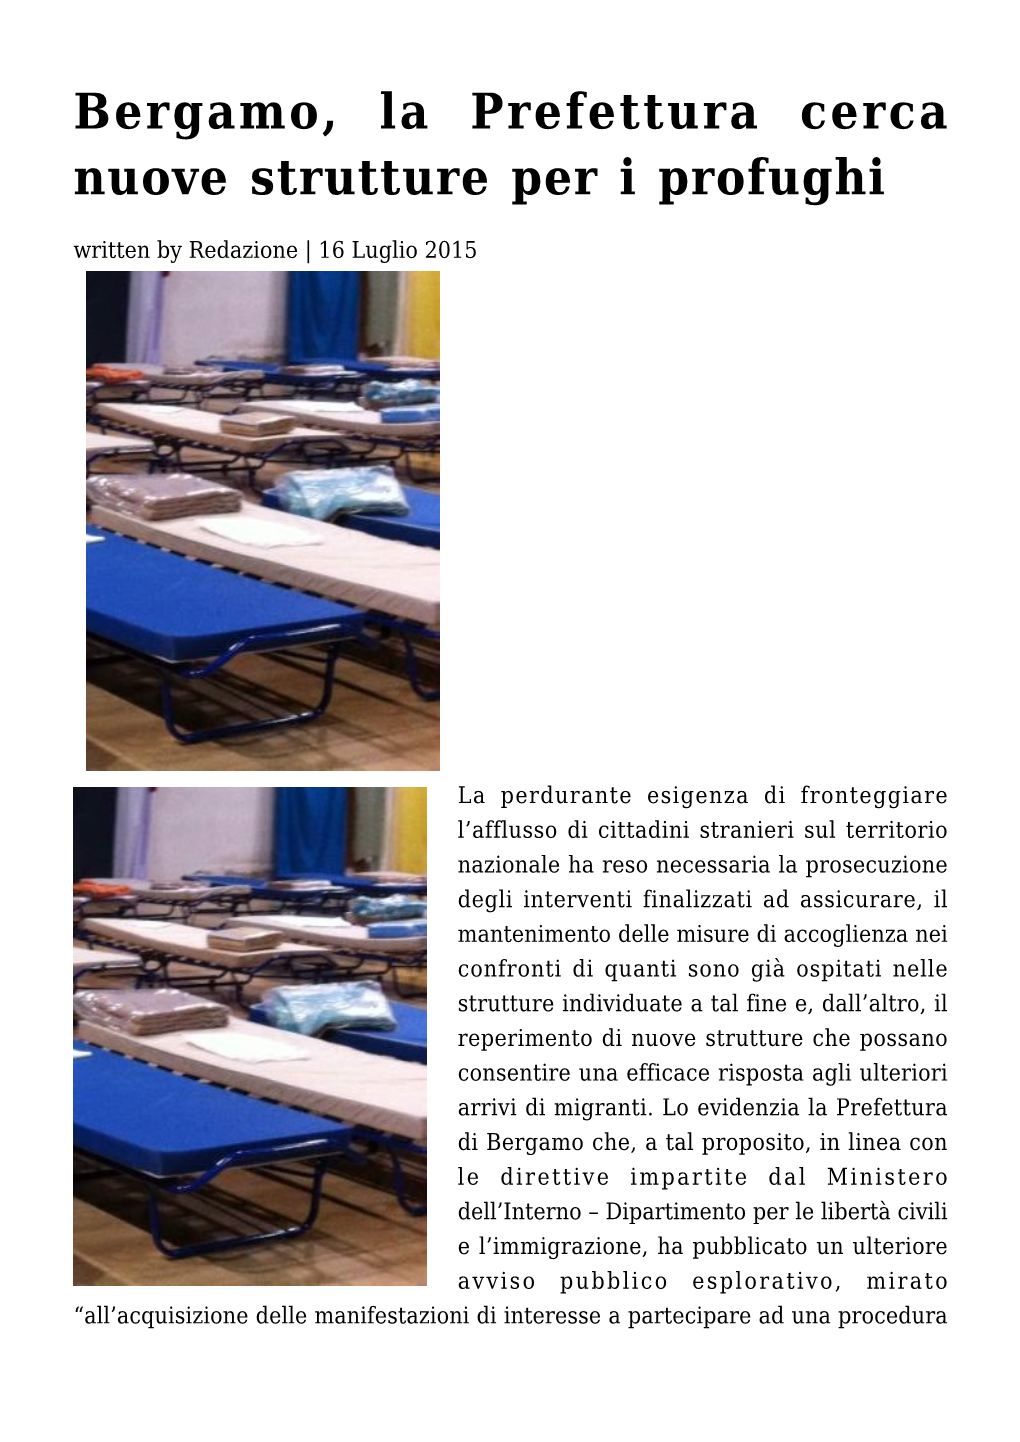 Bergamo, La Prefettura Cerca Nuove Strutture Per I Profughi Written by Redazione | 16 Luglio 2015